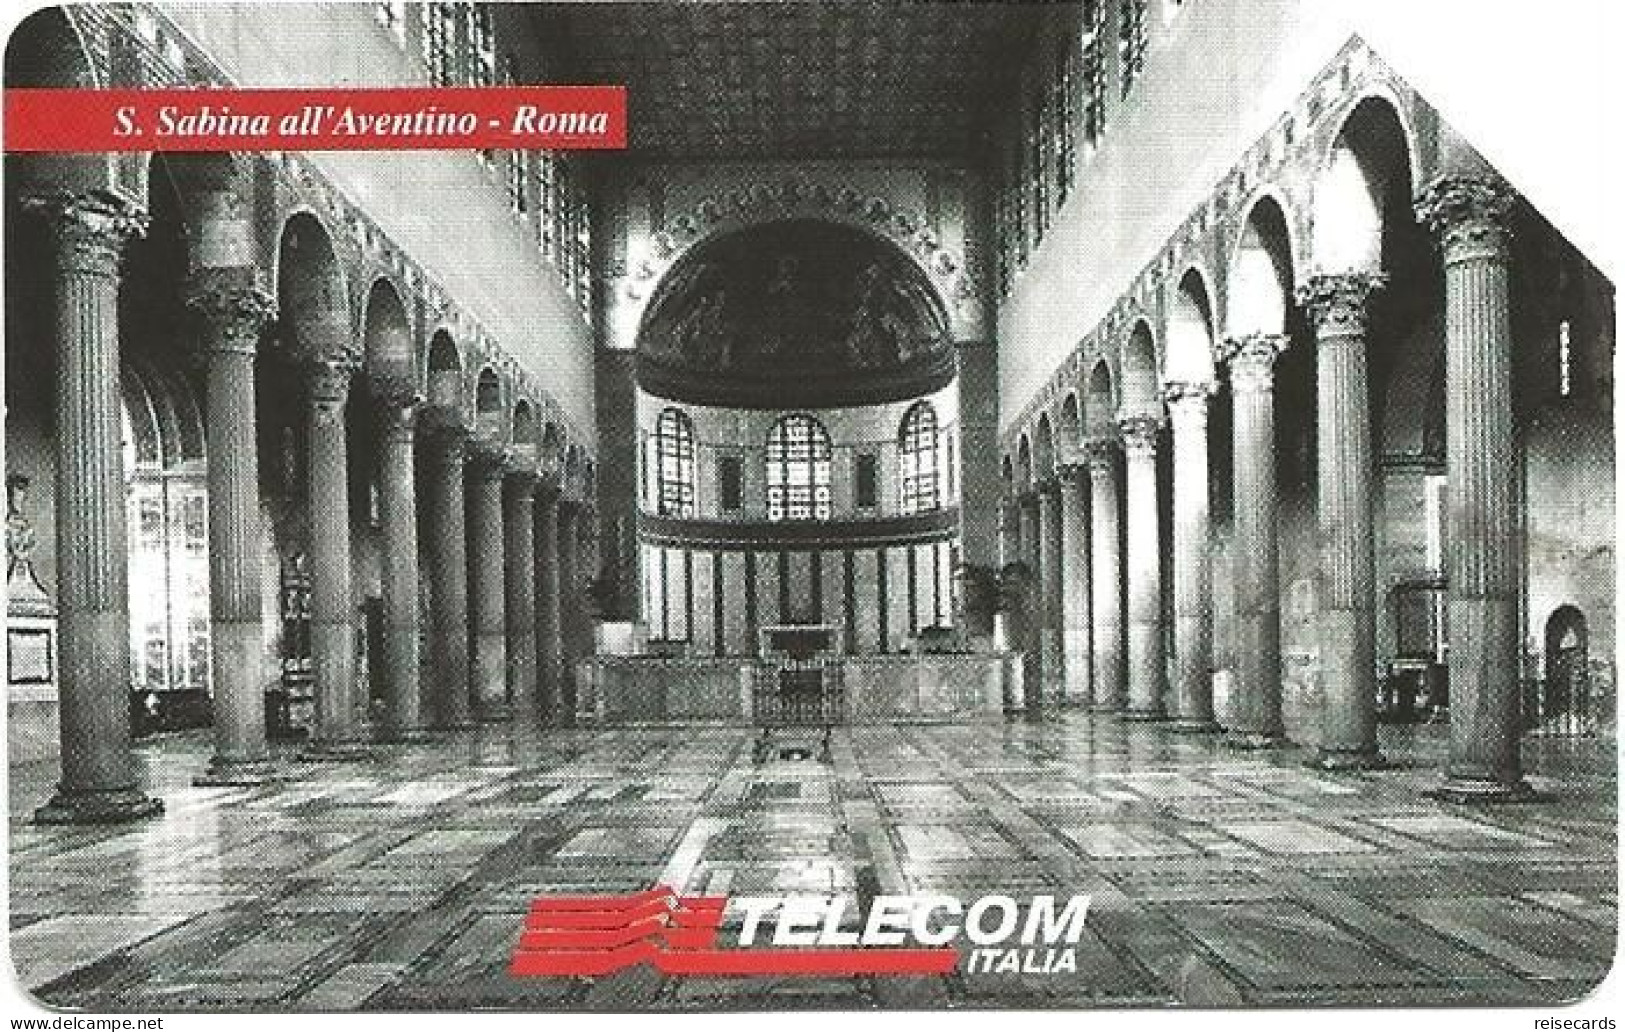 Italy: Telecom Italia - Il Culto Dell'Arte, S. Sabina All'Aventino Roma - Pubbliche Pubblicitarie